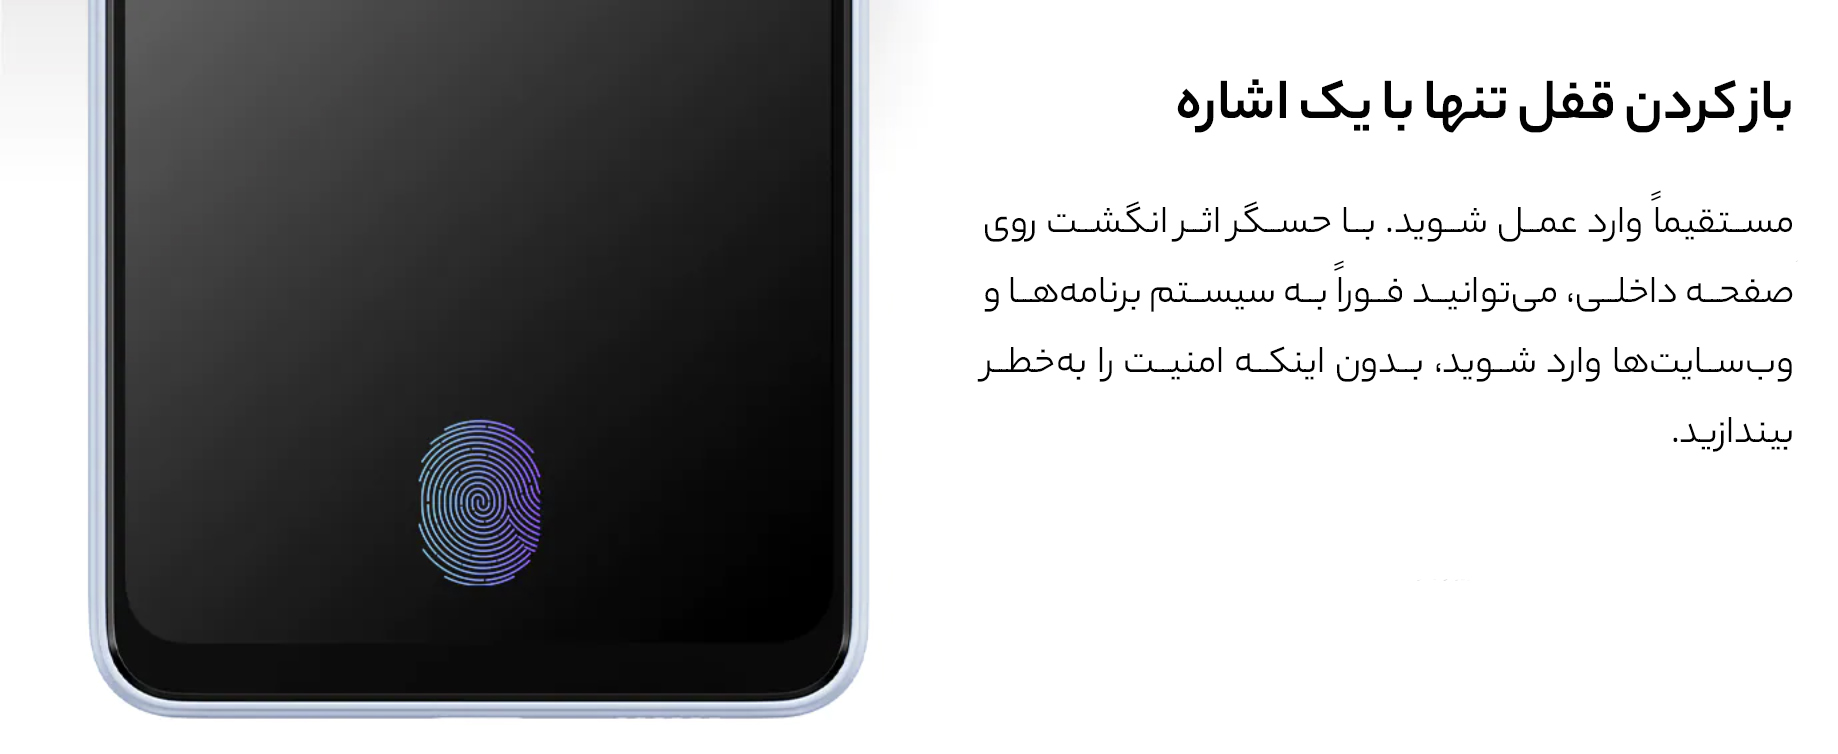 گوشی موبايل سامسونگ مدل Galaxy A33 5G ظرفیت 128 گیگابایت - رم 6 گیگابایت